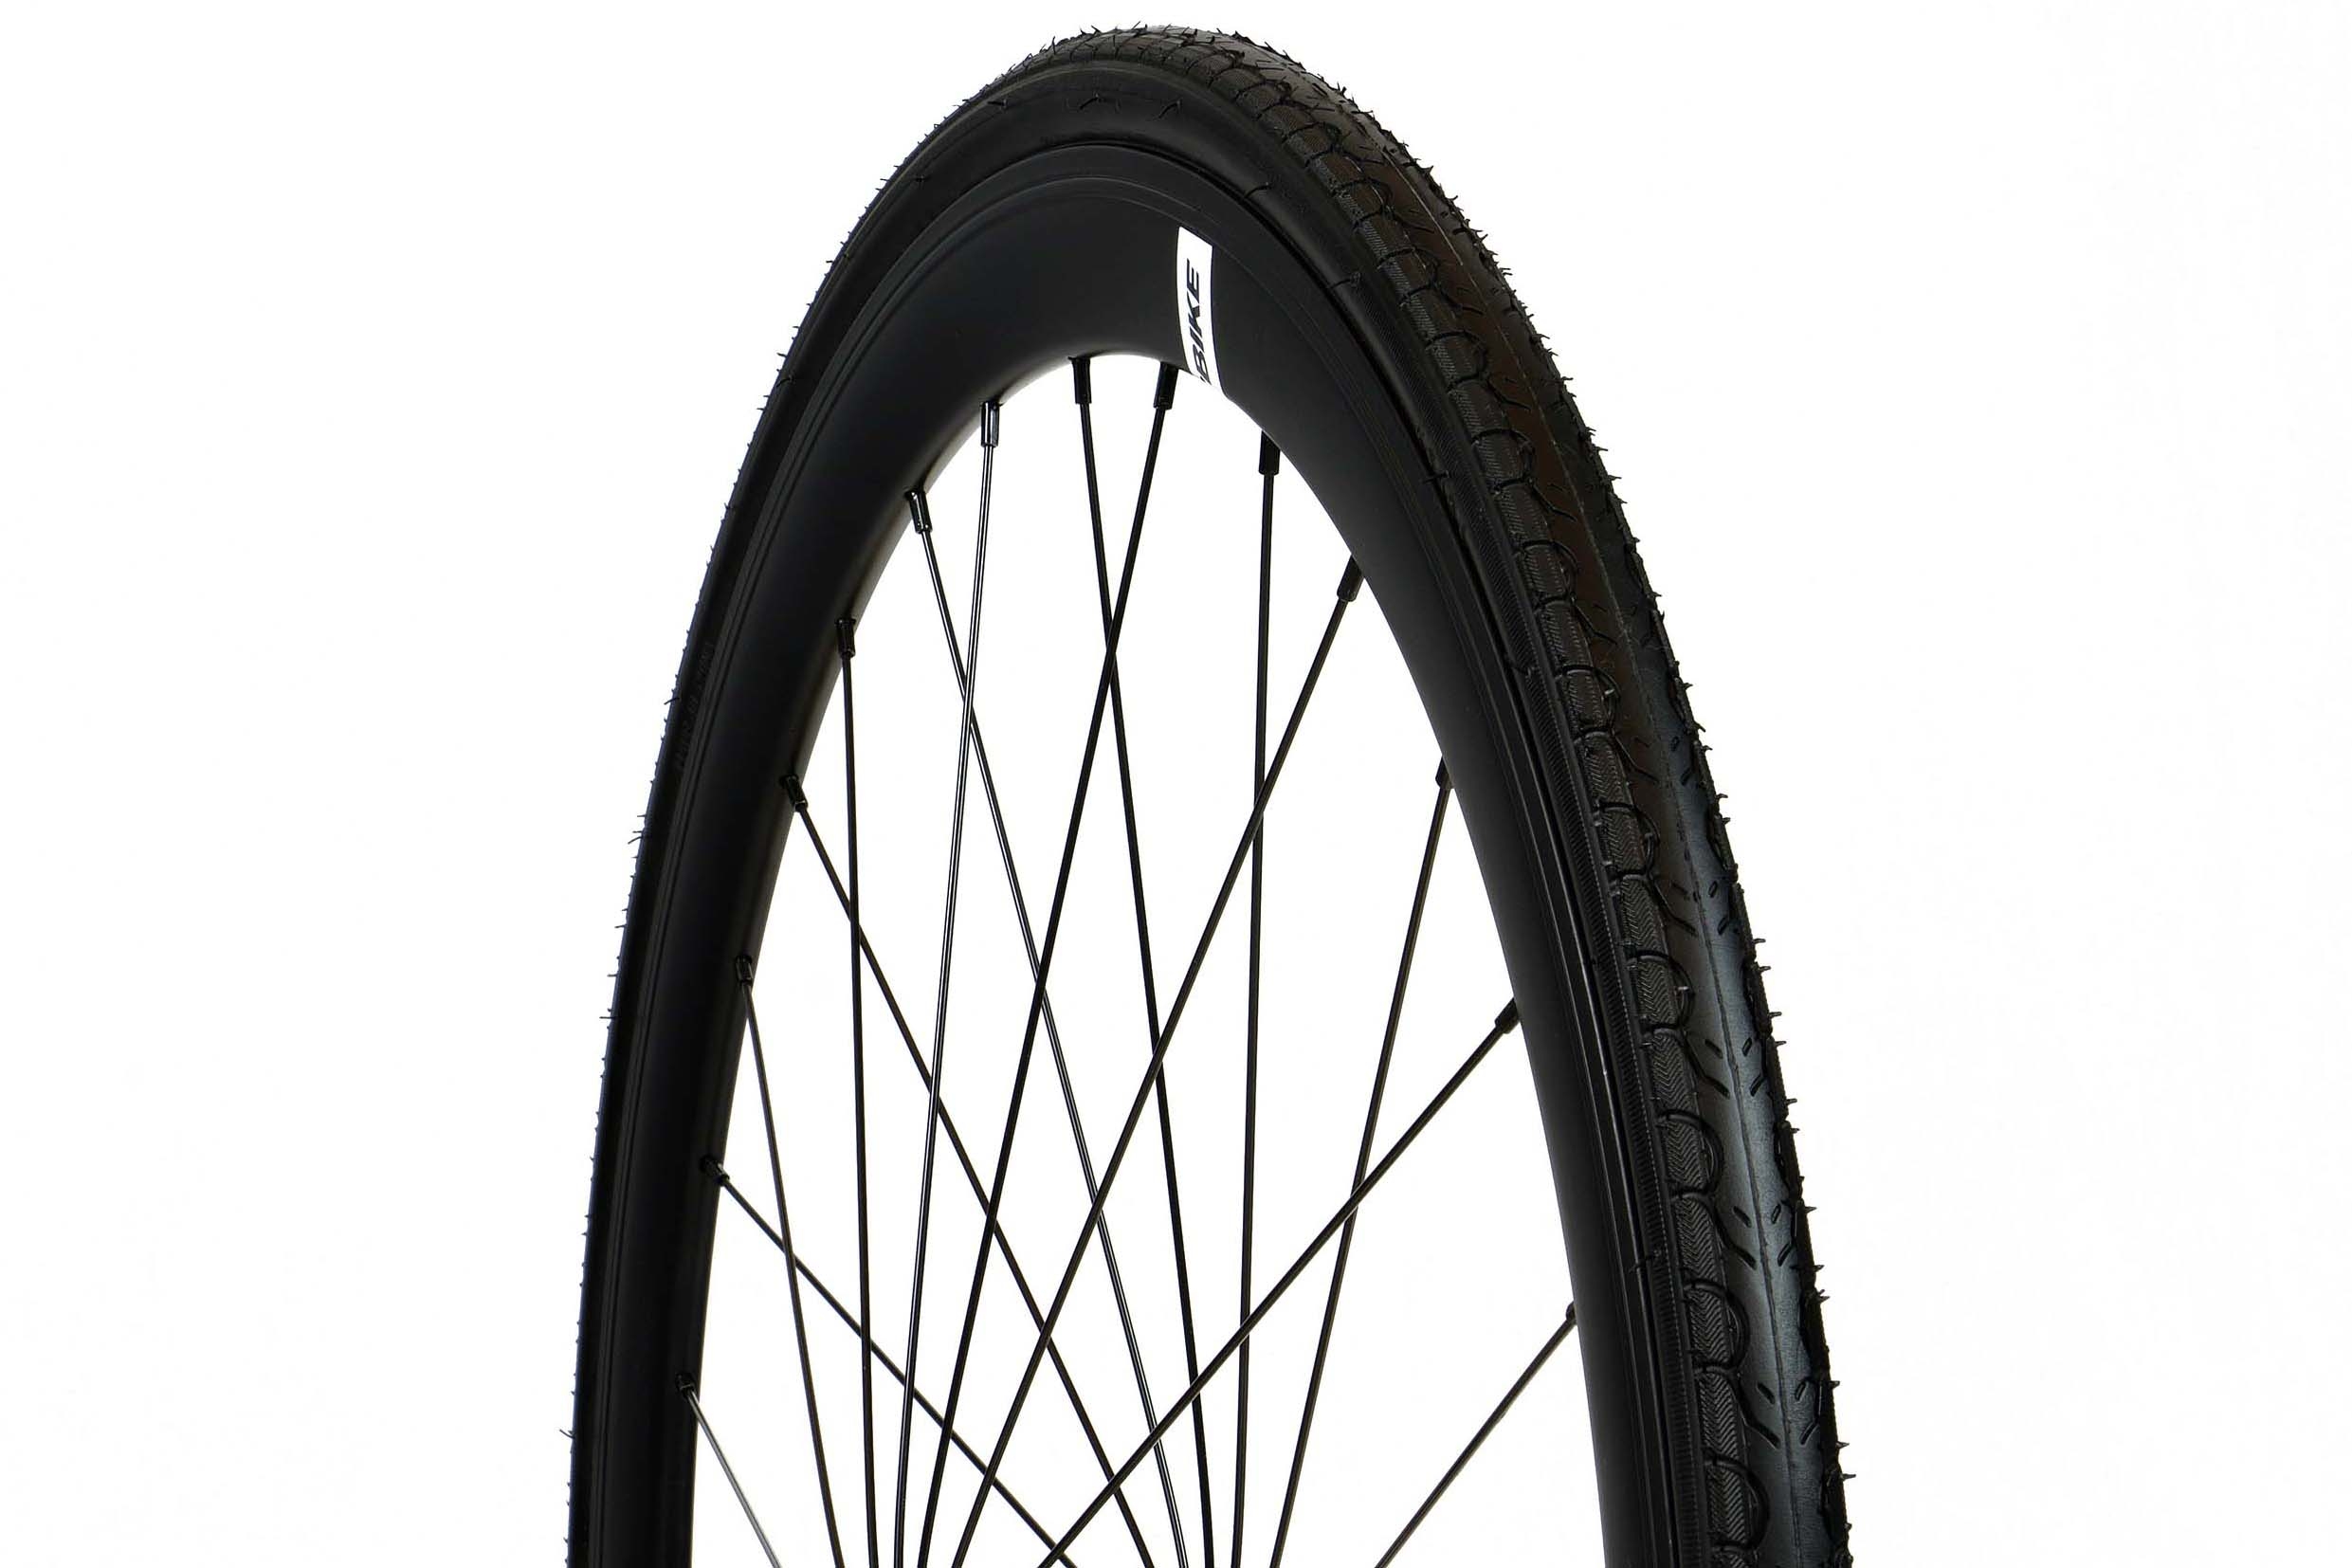 700x25c bike tire